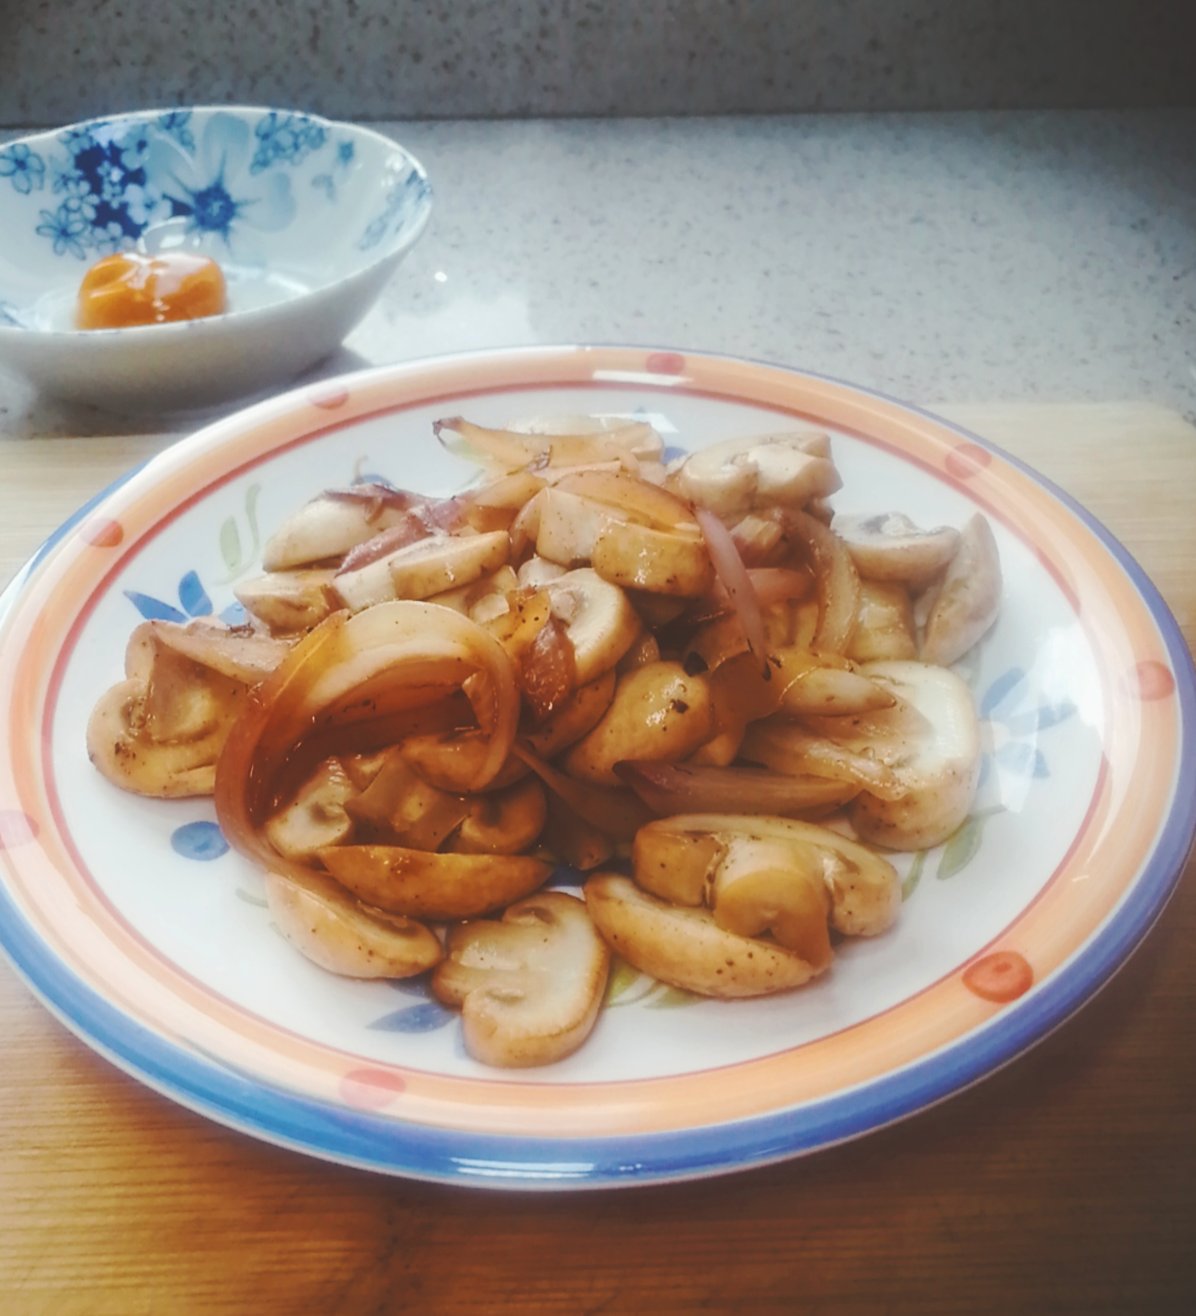 【健康三餐】焦香洋葱煎蘑菇